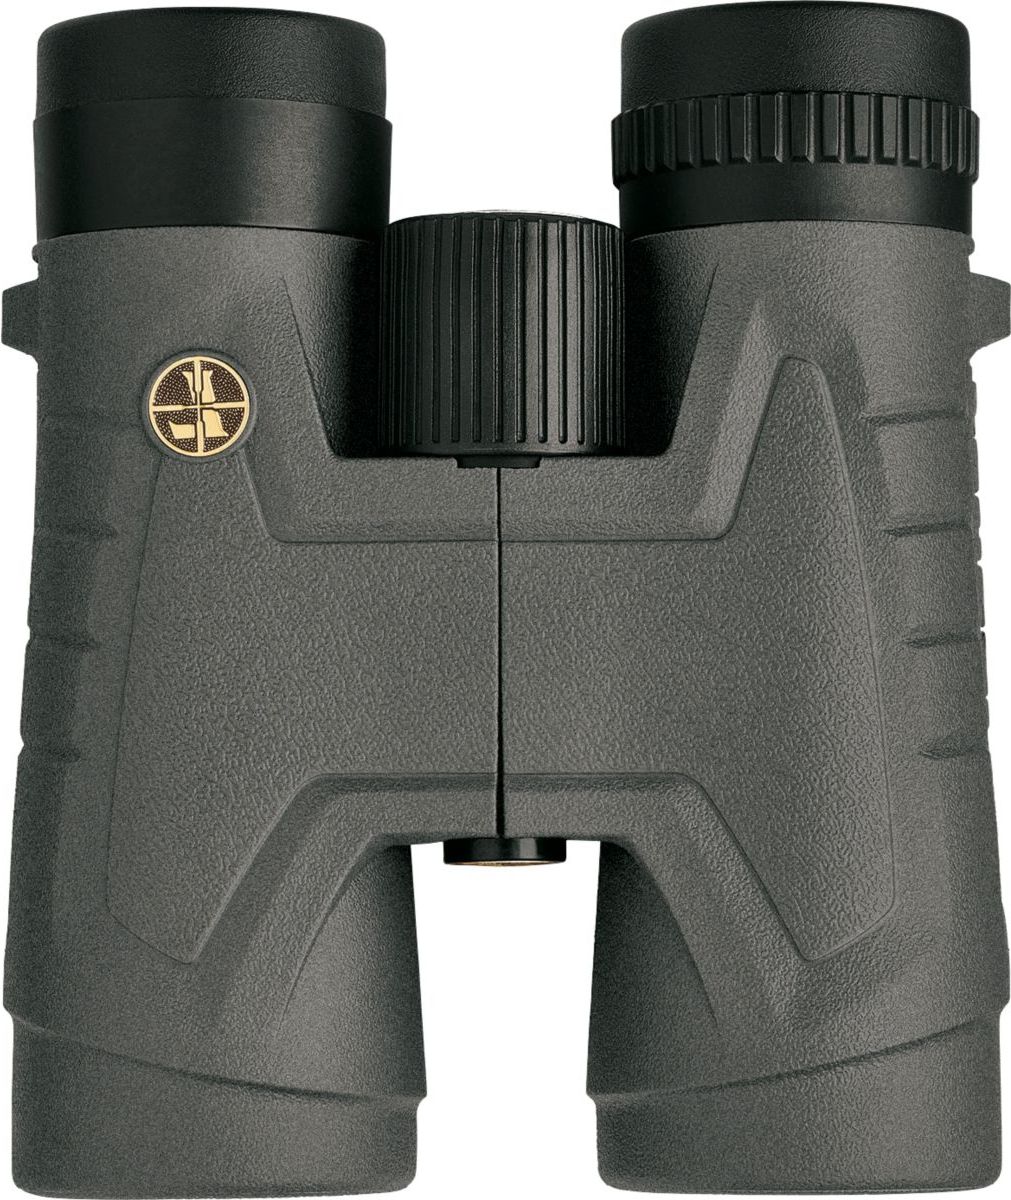 Leupold® BX-2 Acadia® 10x42 Binoculars